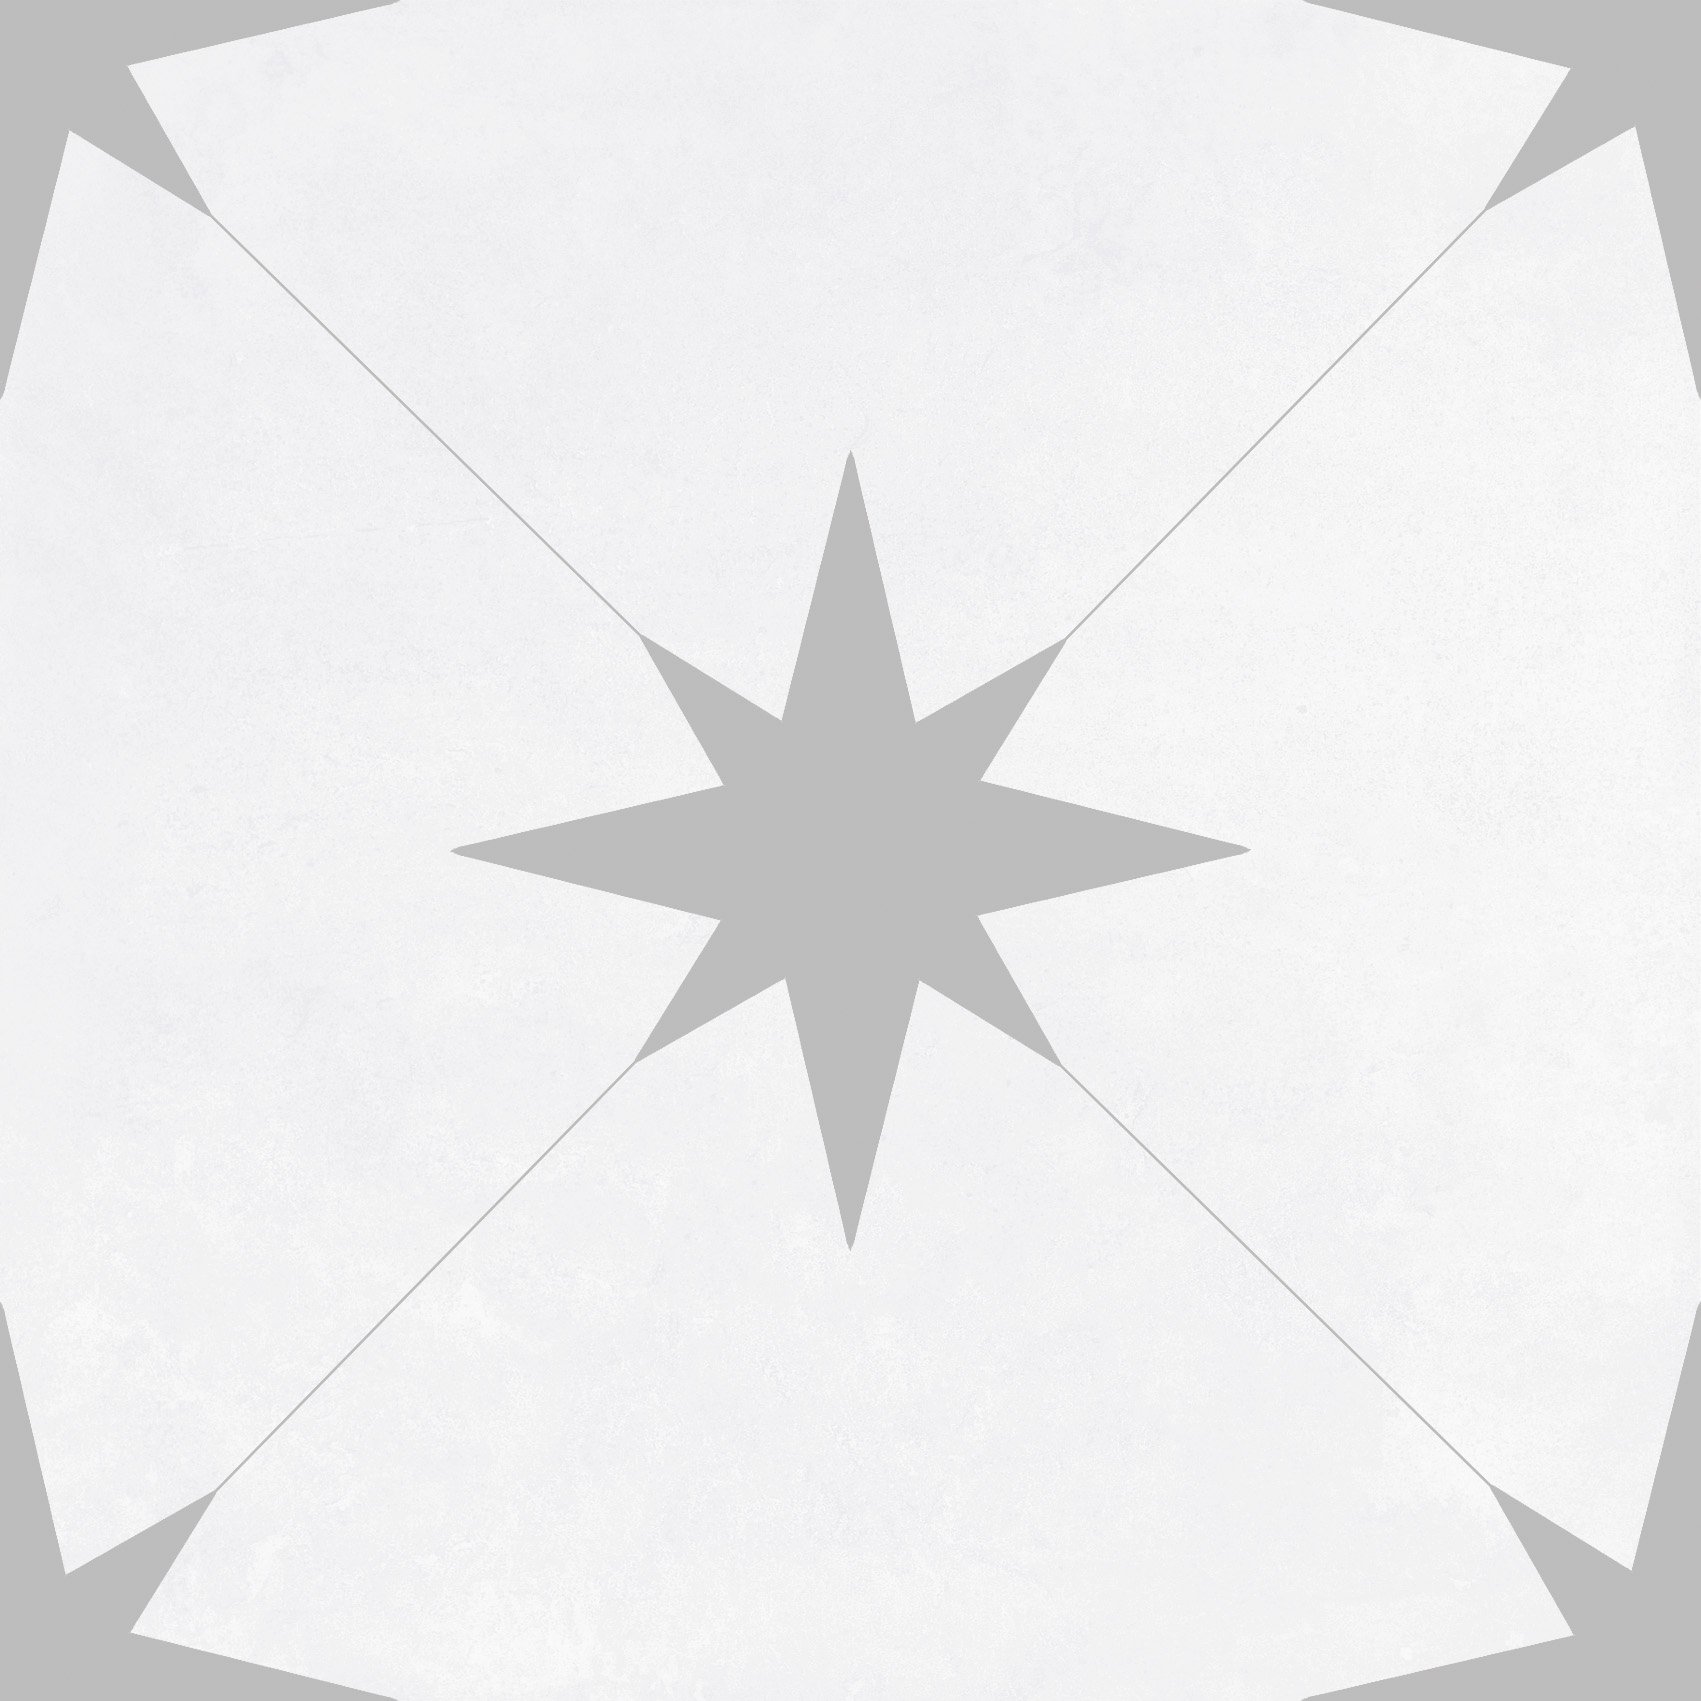 Retro-Fliese Sternenmuster Llevant grey graue Sterne Bodenfliesen Wandfliesen grau weiss